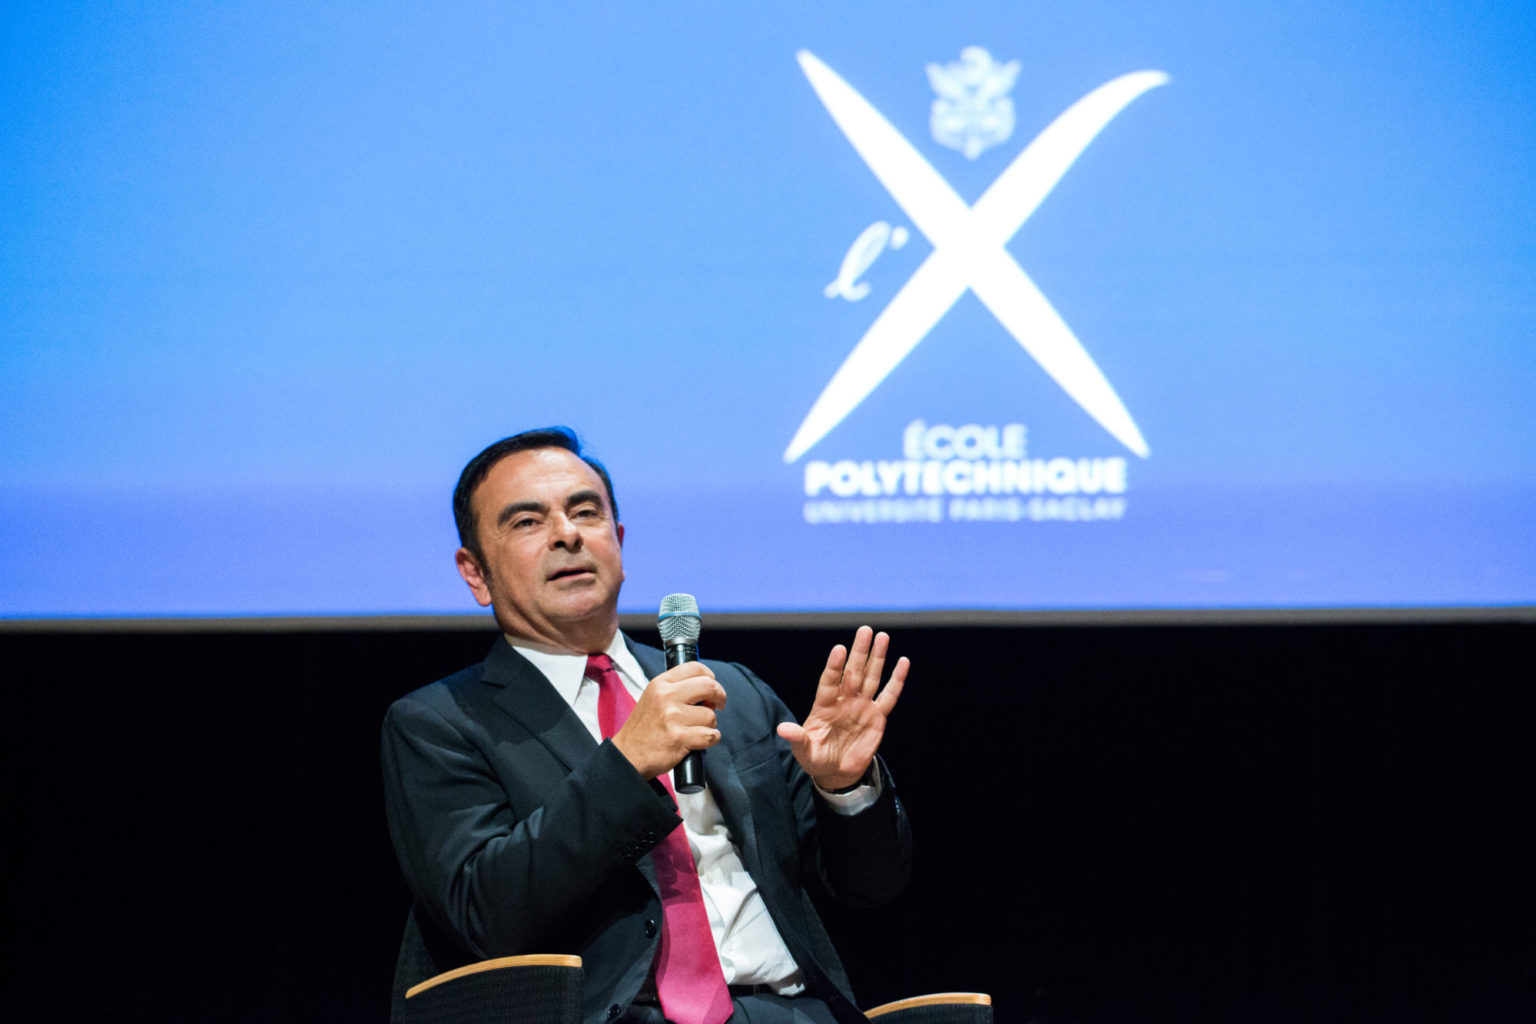 Conférence de Carlos Ghosn, président-directeur général de l’alliance Renault-Nissan, à l'école Polytechnique